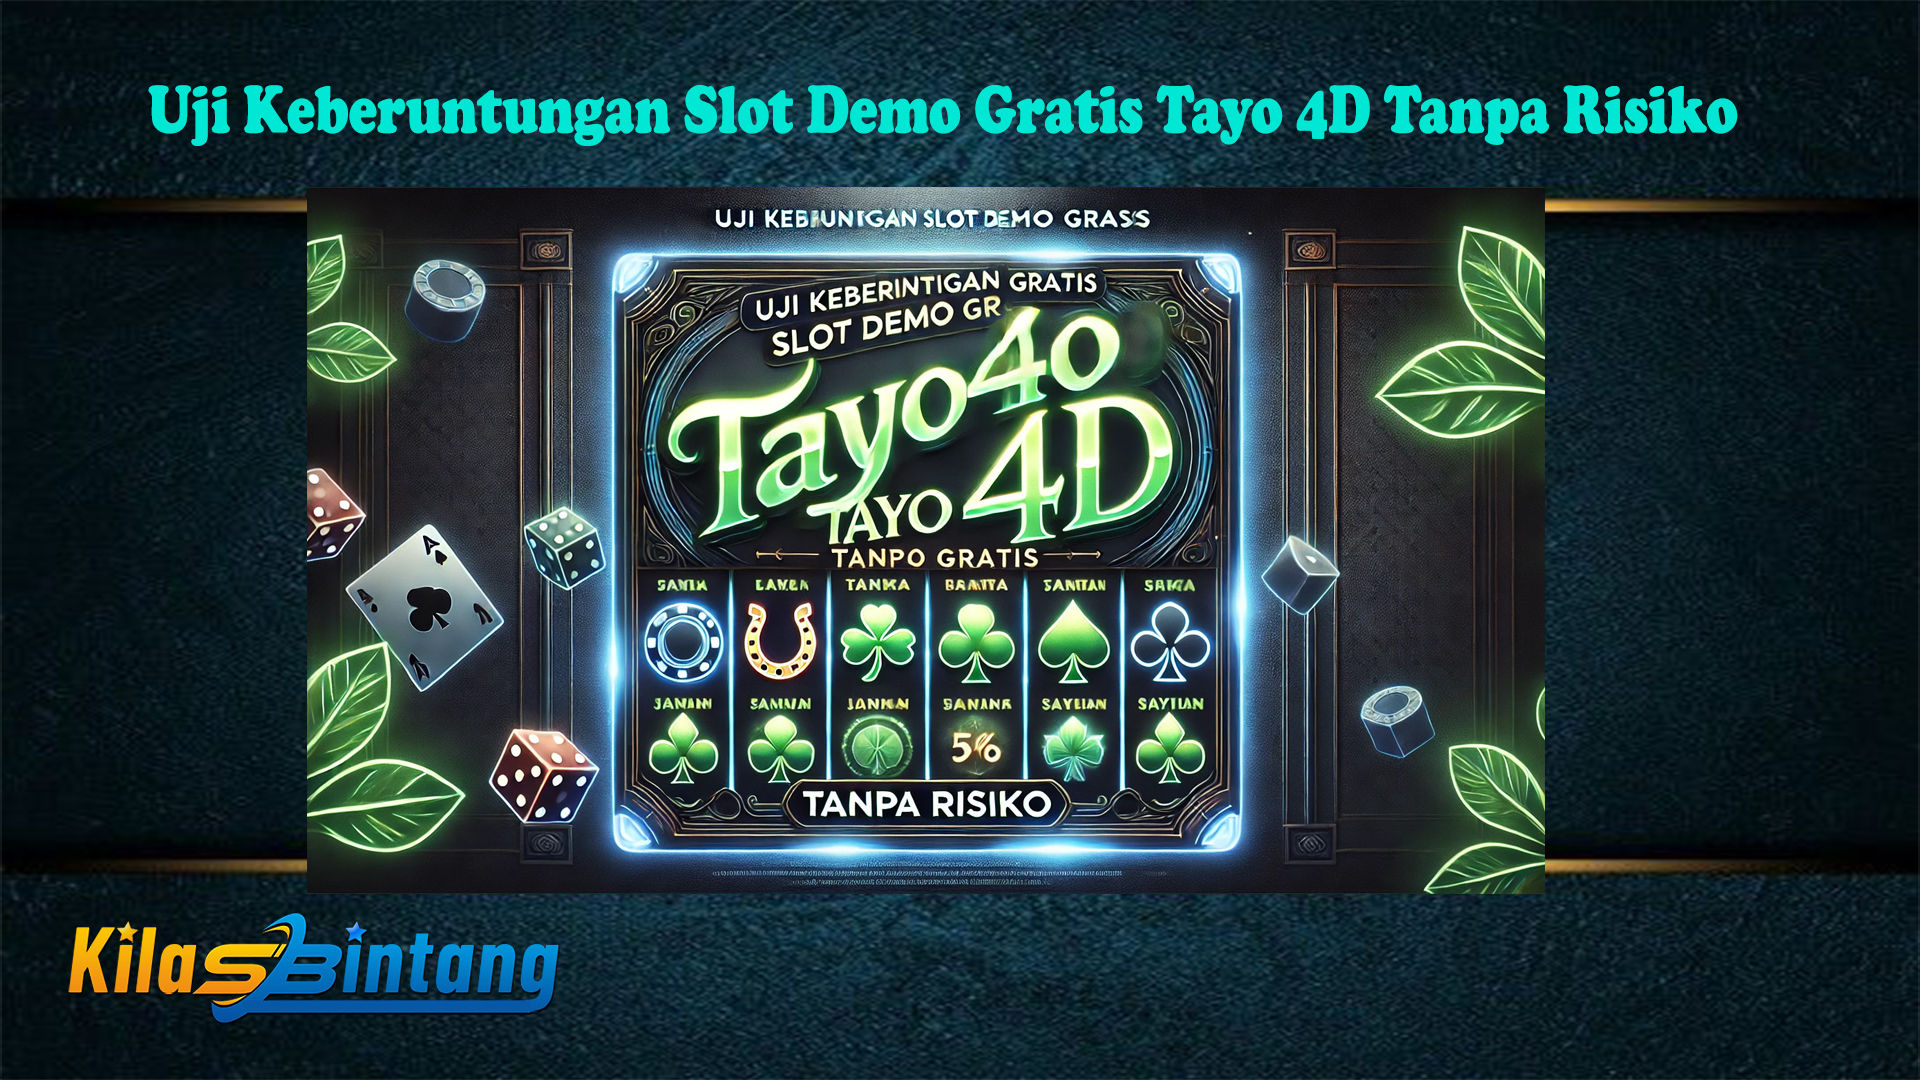 Uji Keberuntungan Slot Demo Gratis Tayo 4D Tanpa Risiko